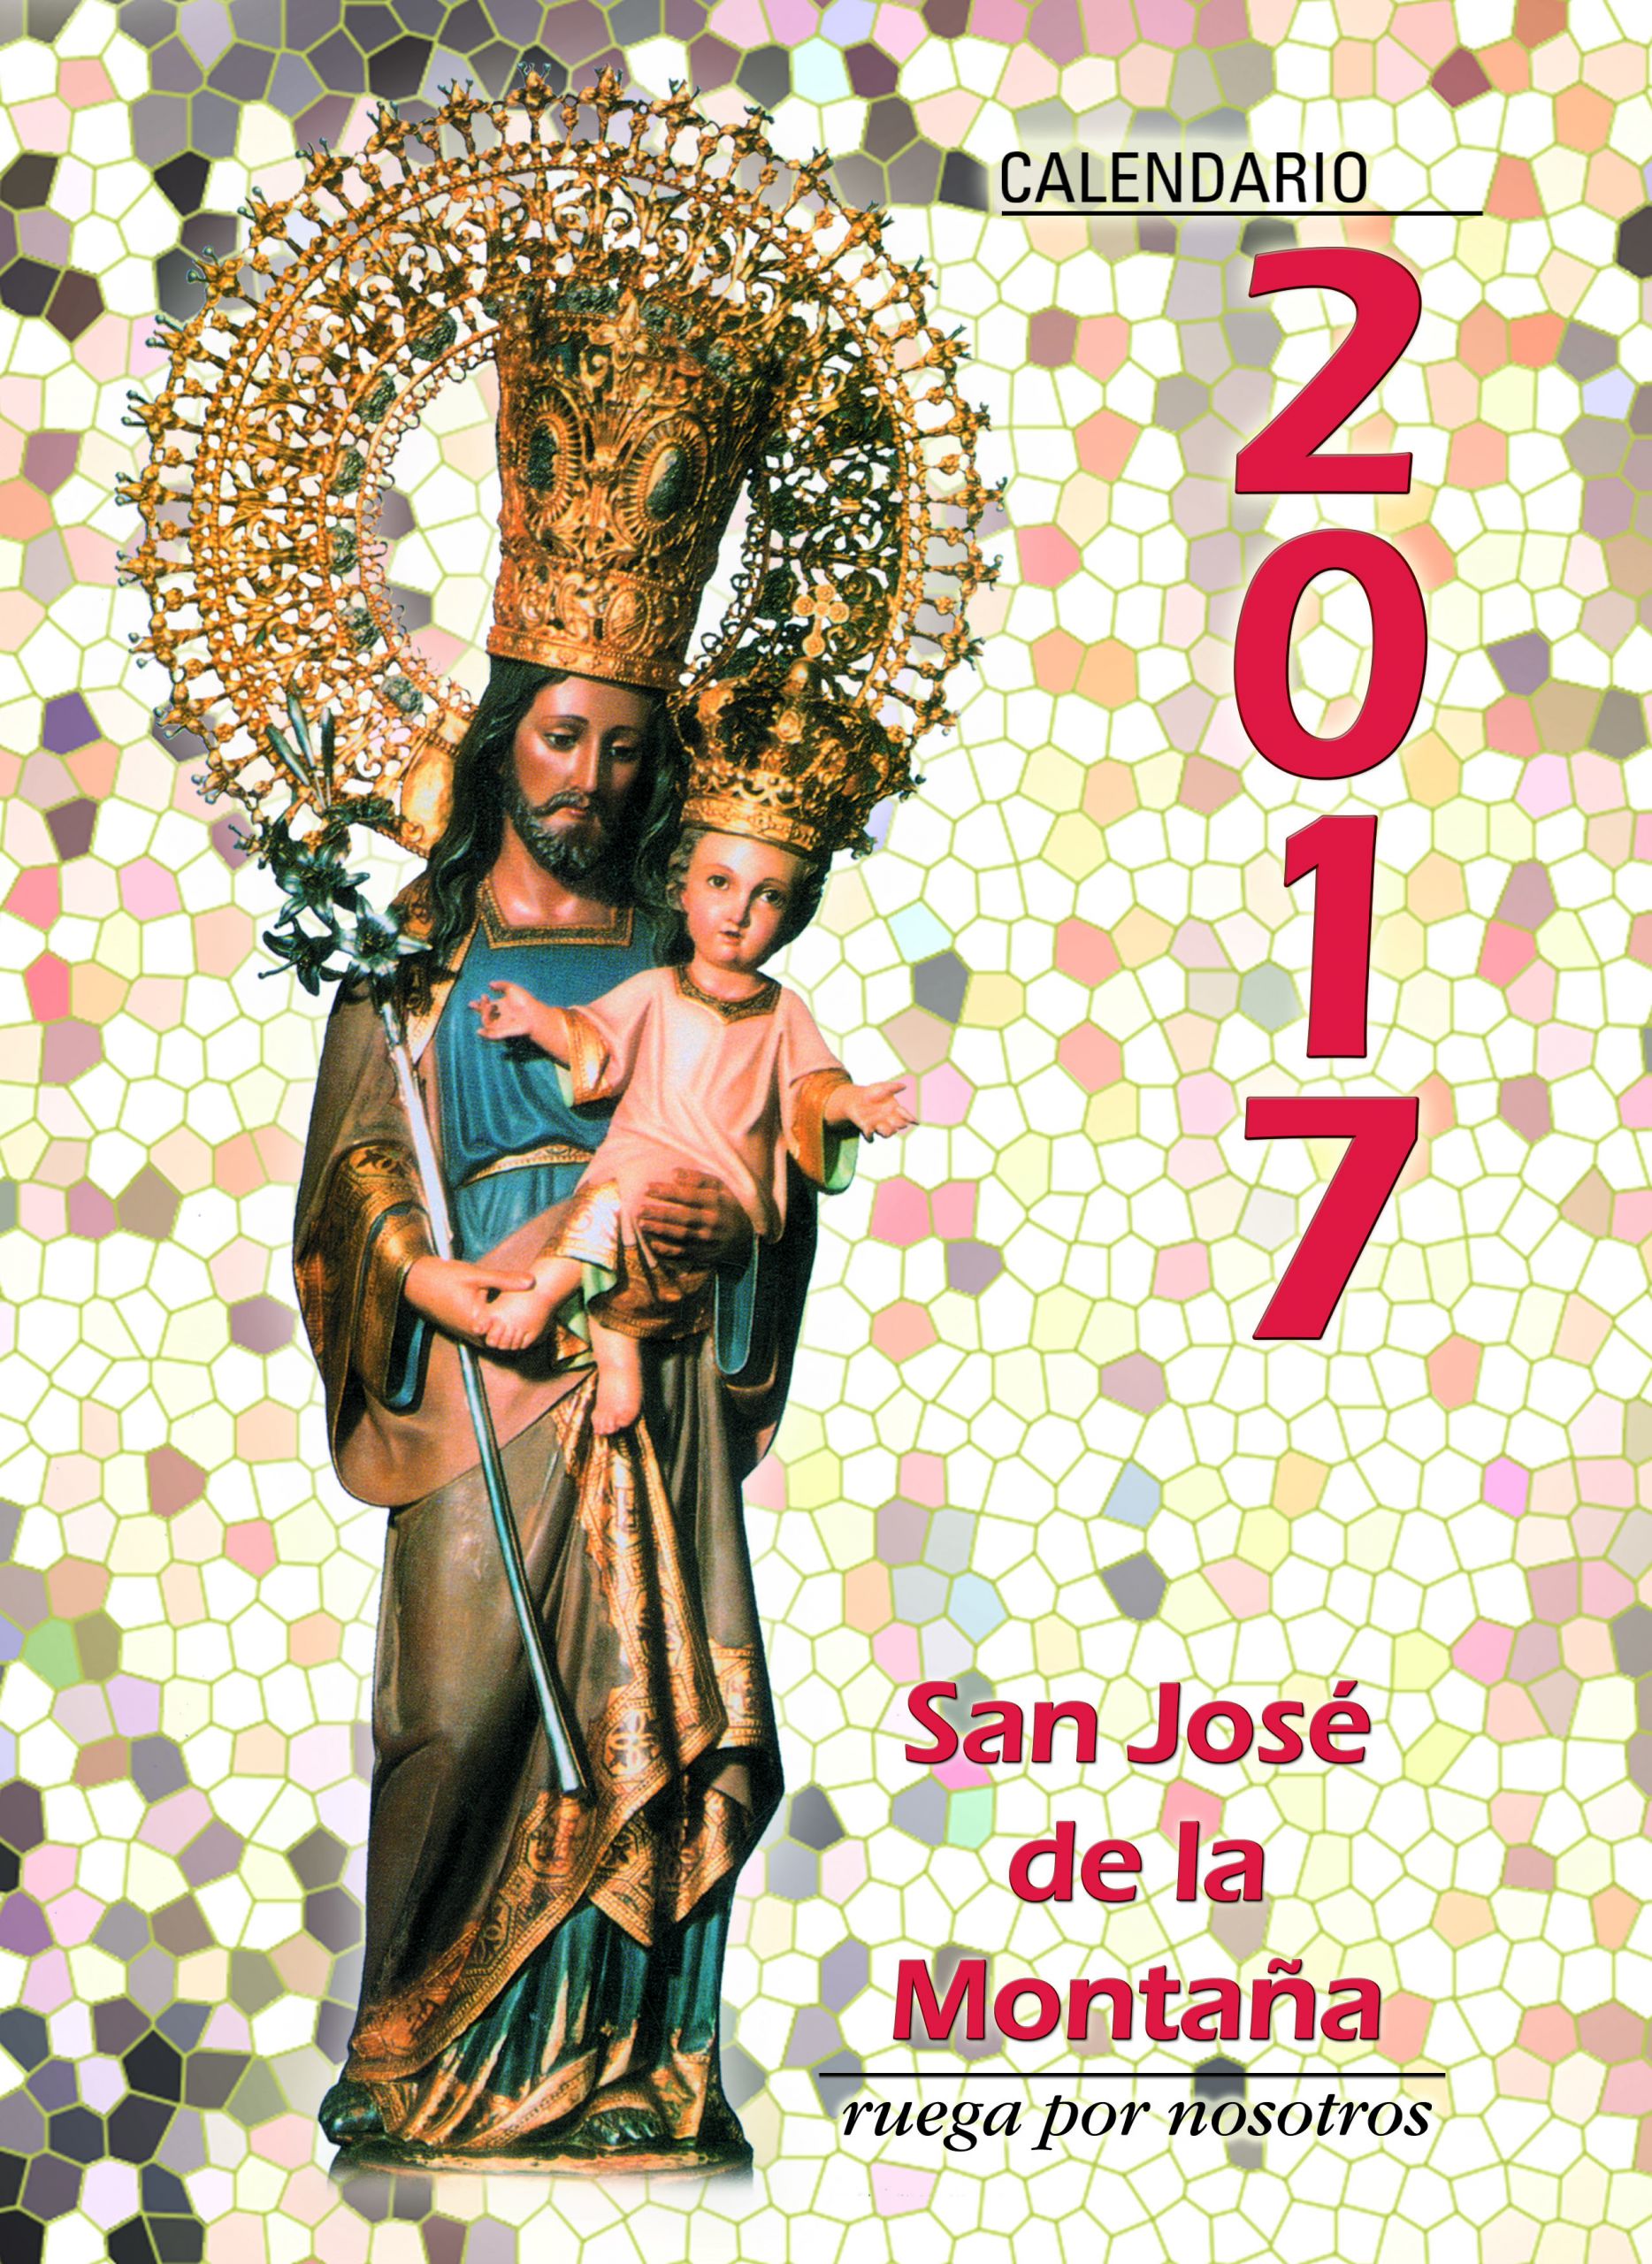 Calendario 2017 barcelona